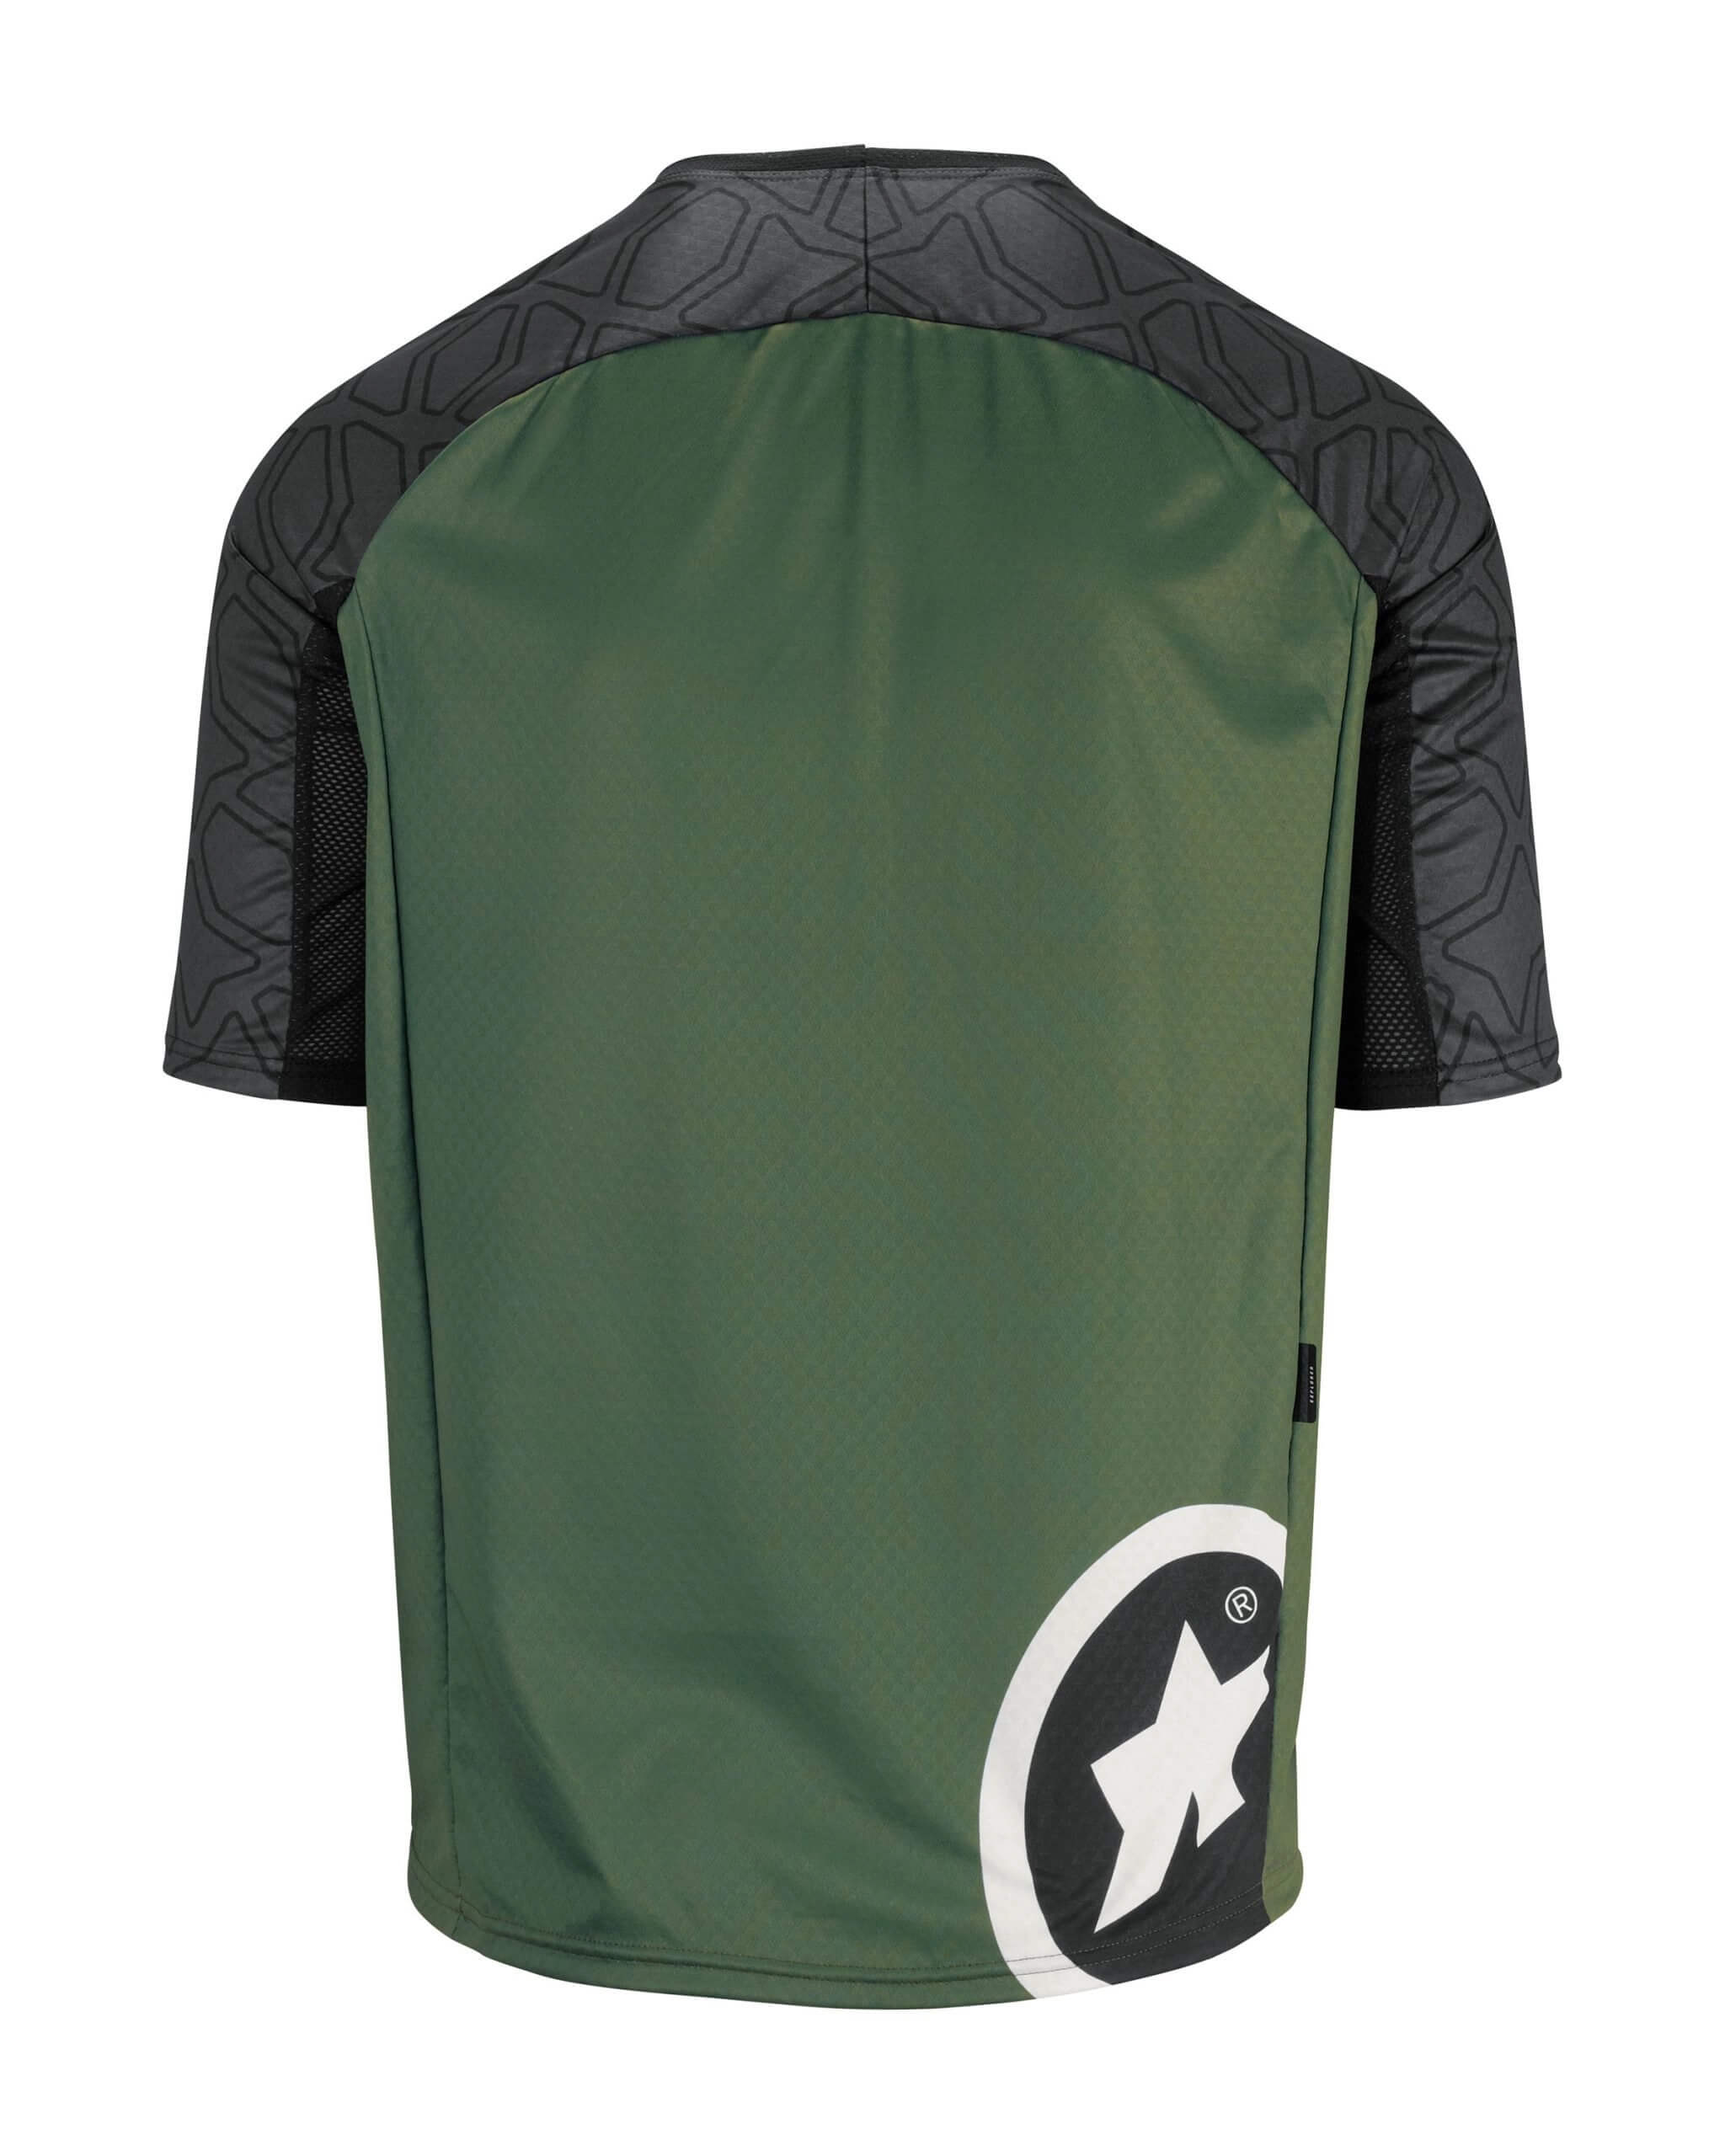 Джерси ASSOS Trail SS, кор. рукав, мужское, зеленое с черным, XL фото 2